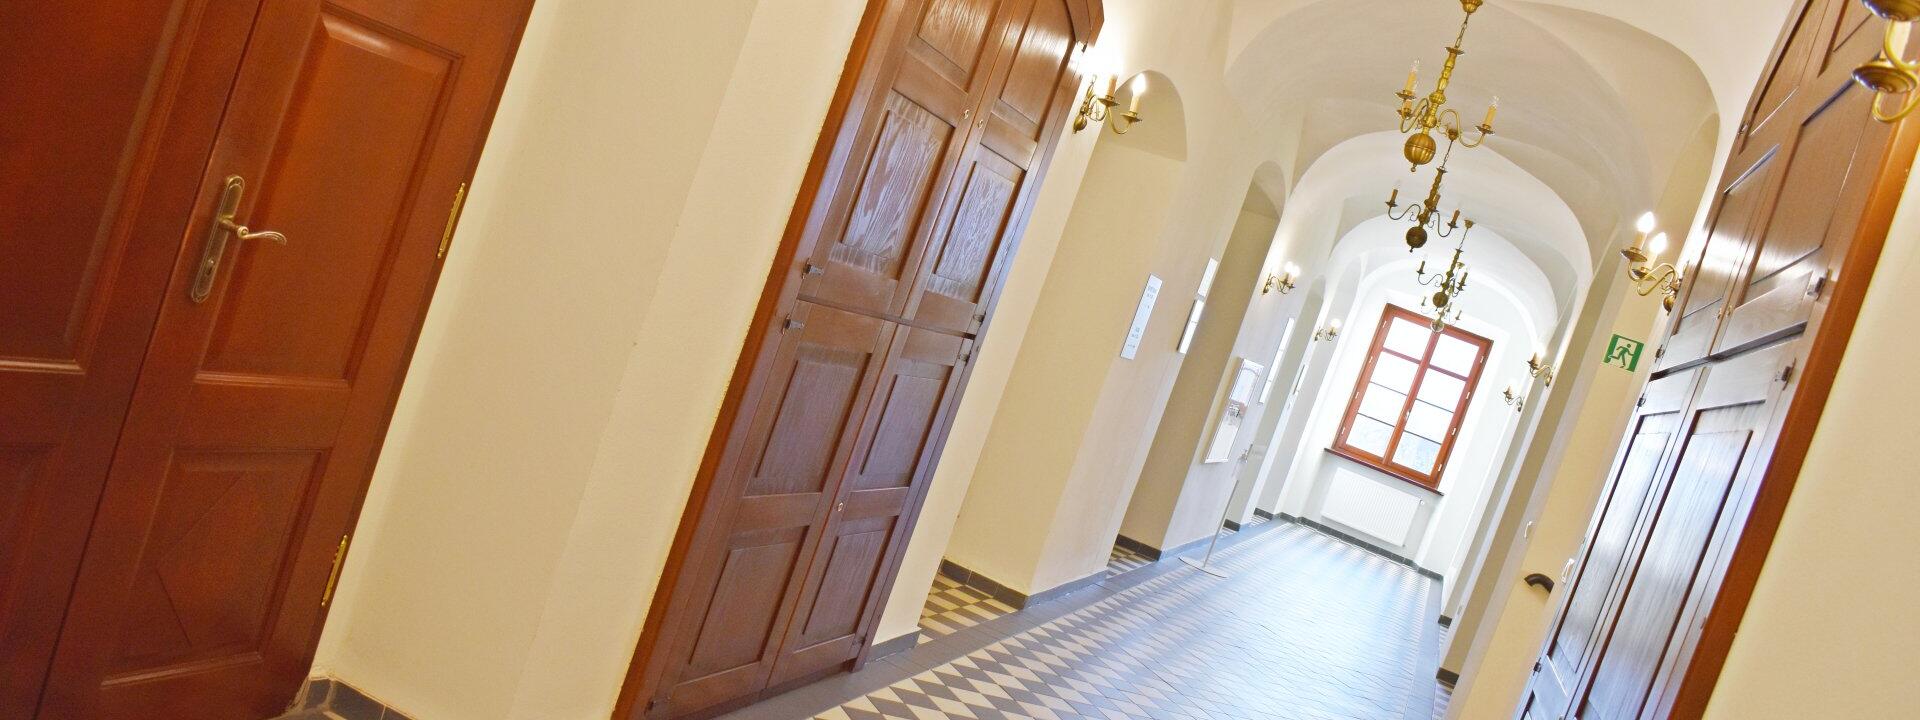 korytarz na pierwszym piętrze pałacu w gaworzycach